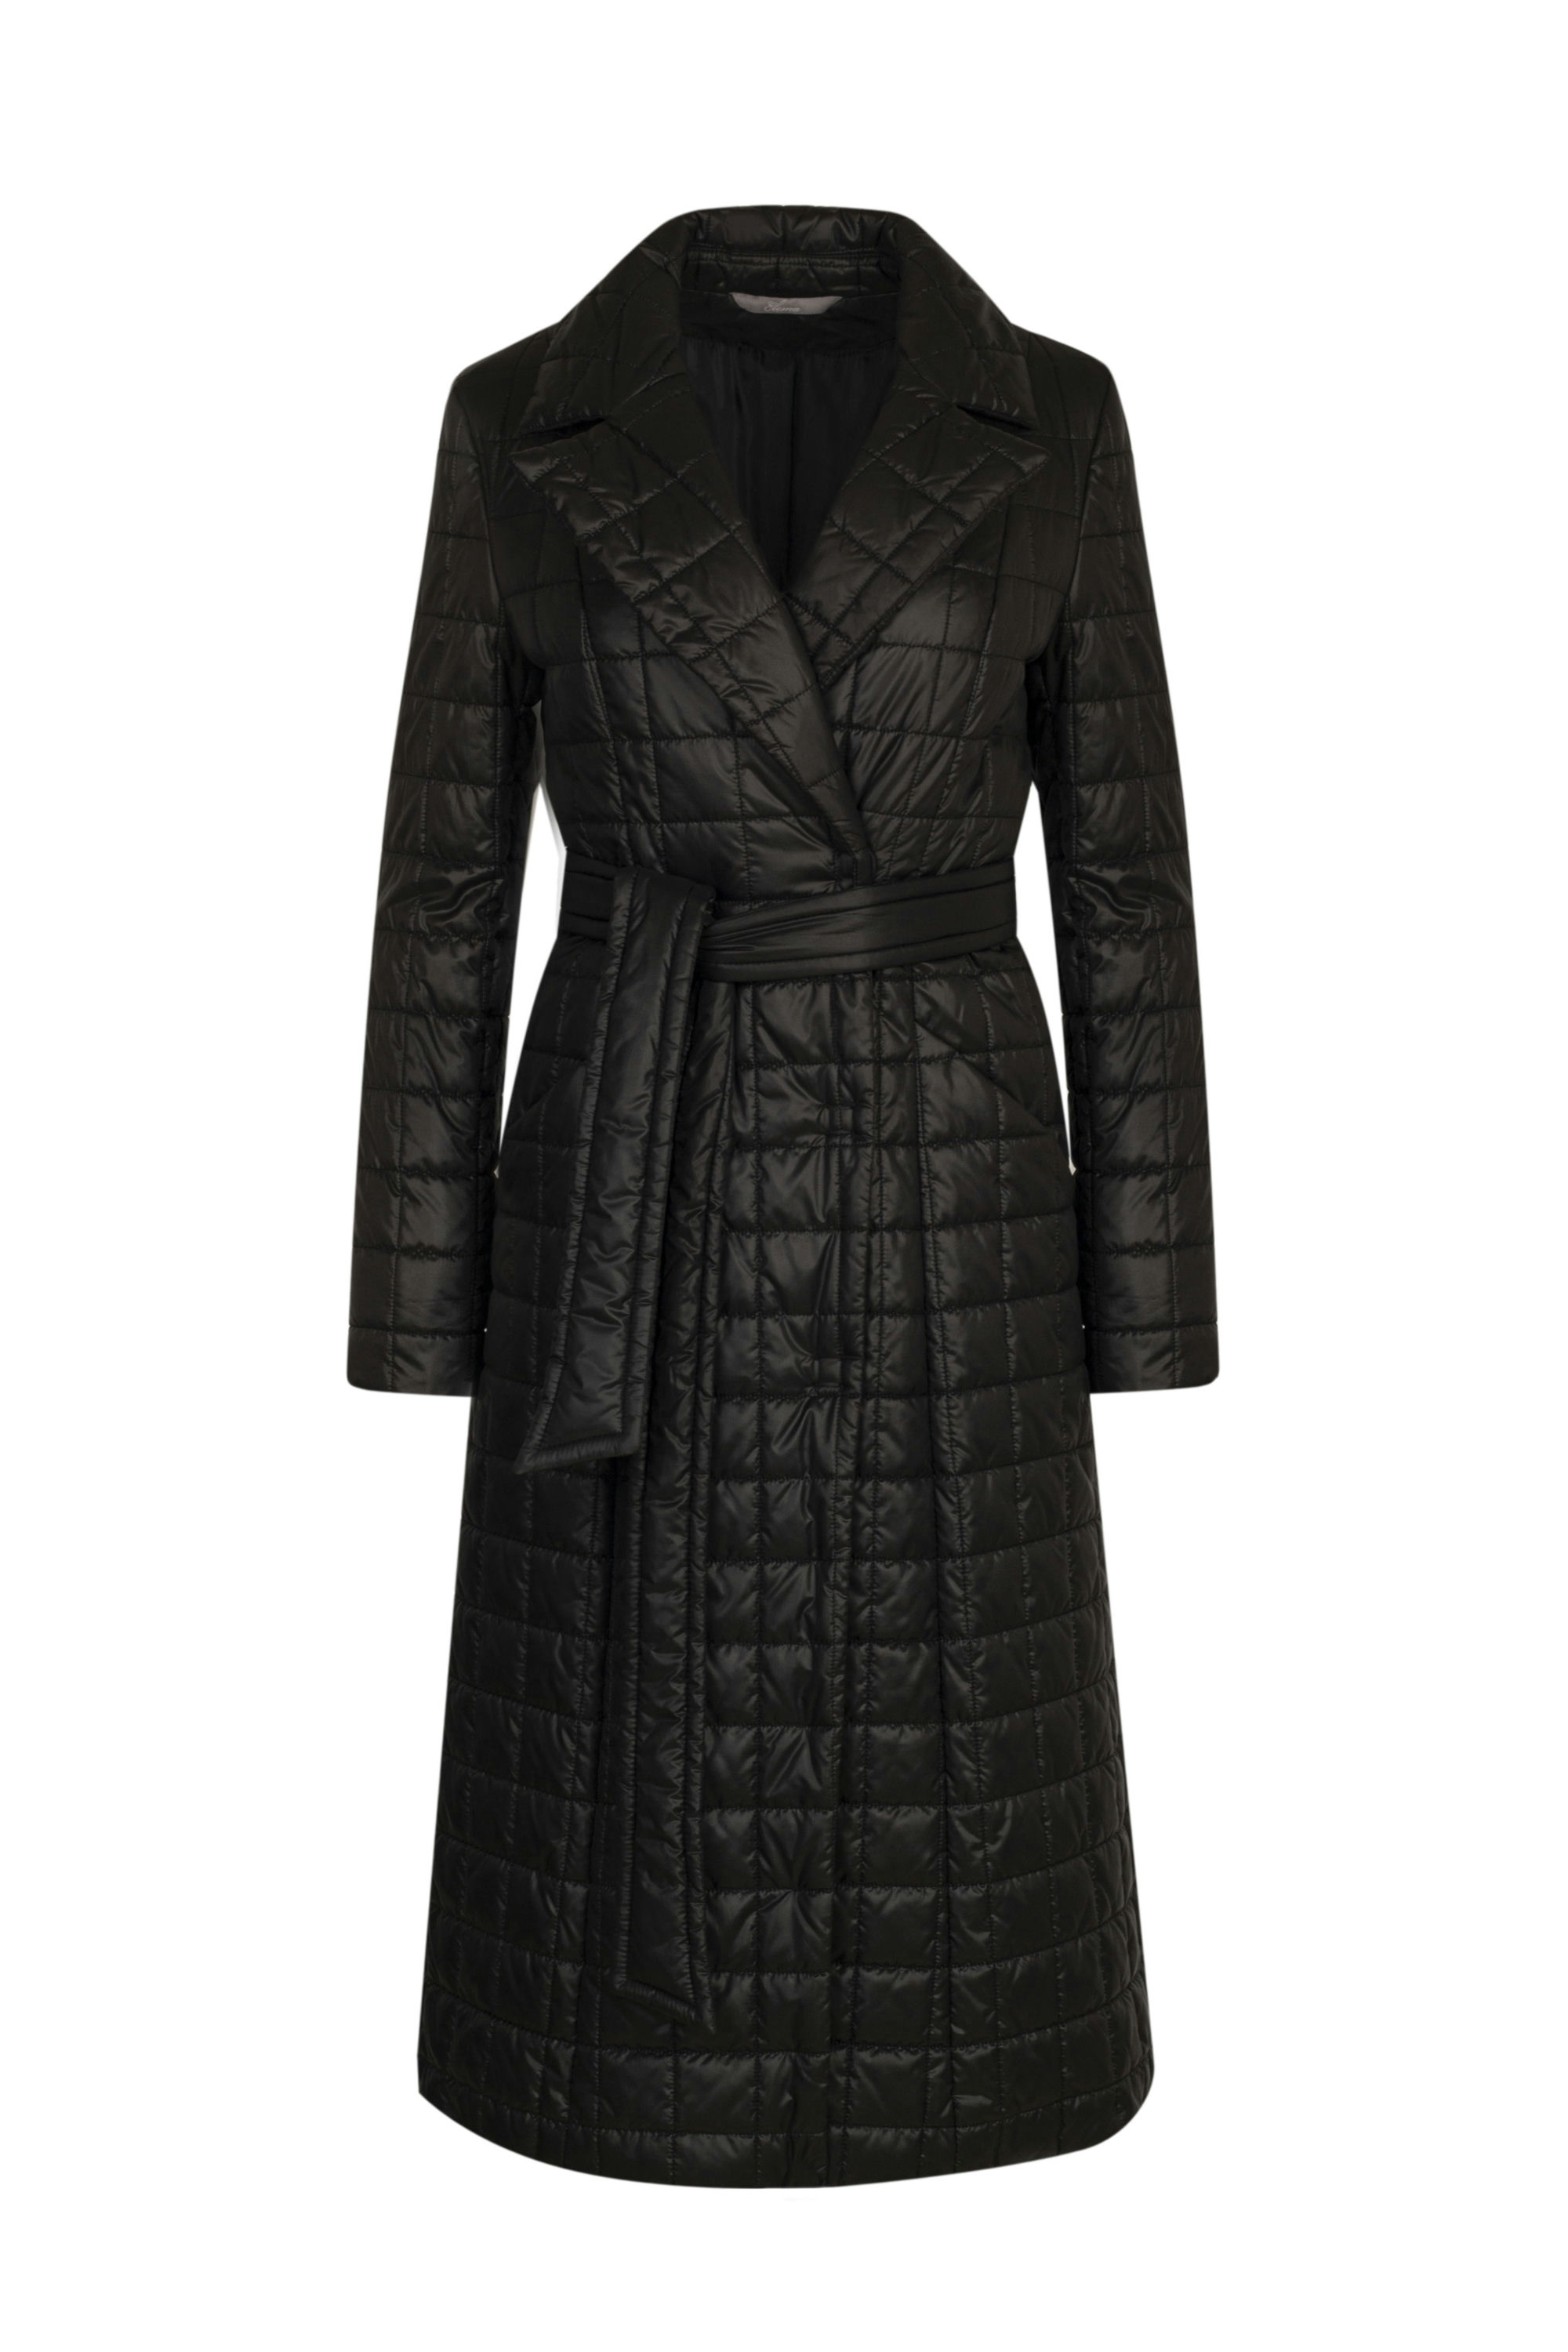 Пальто женское плащевое утепленное 5-11475-1. Фото 1.